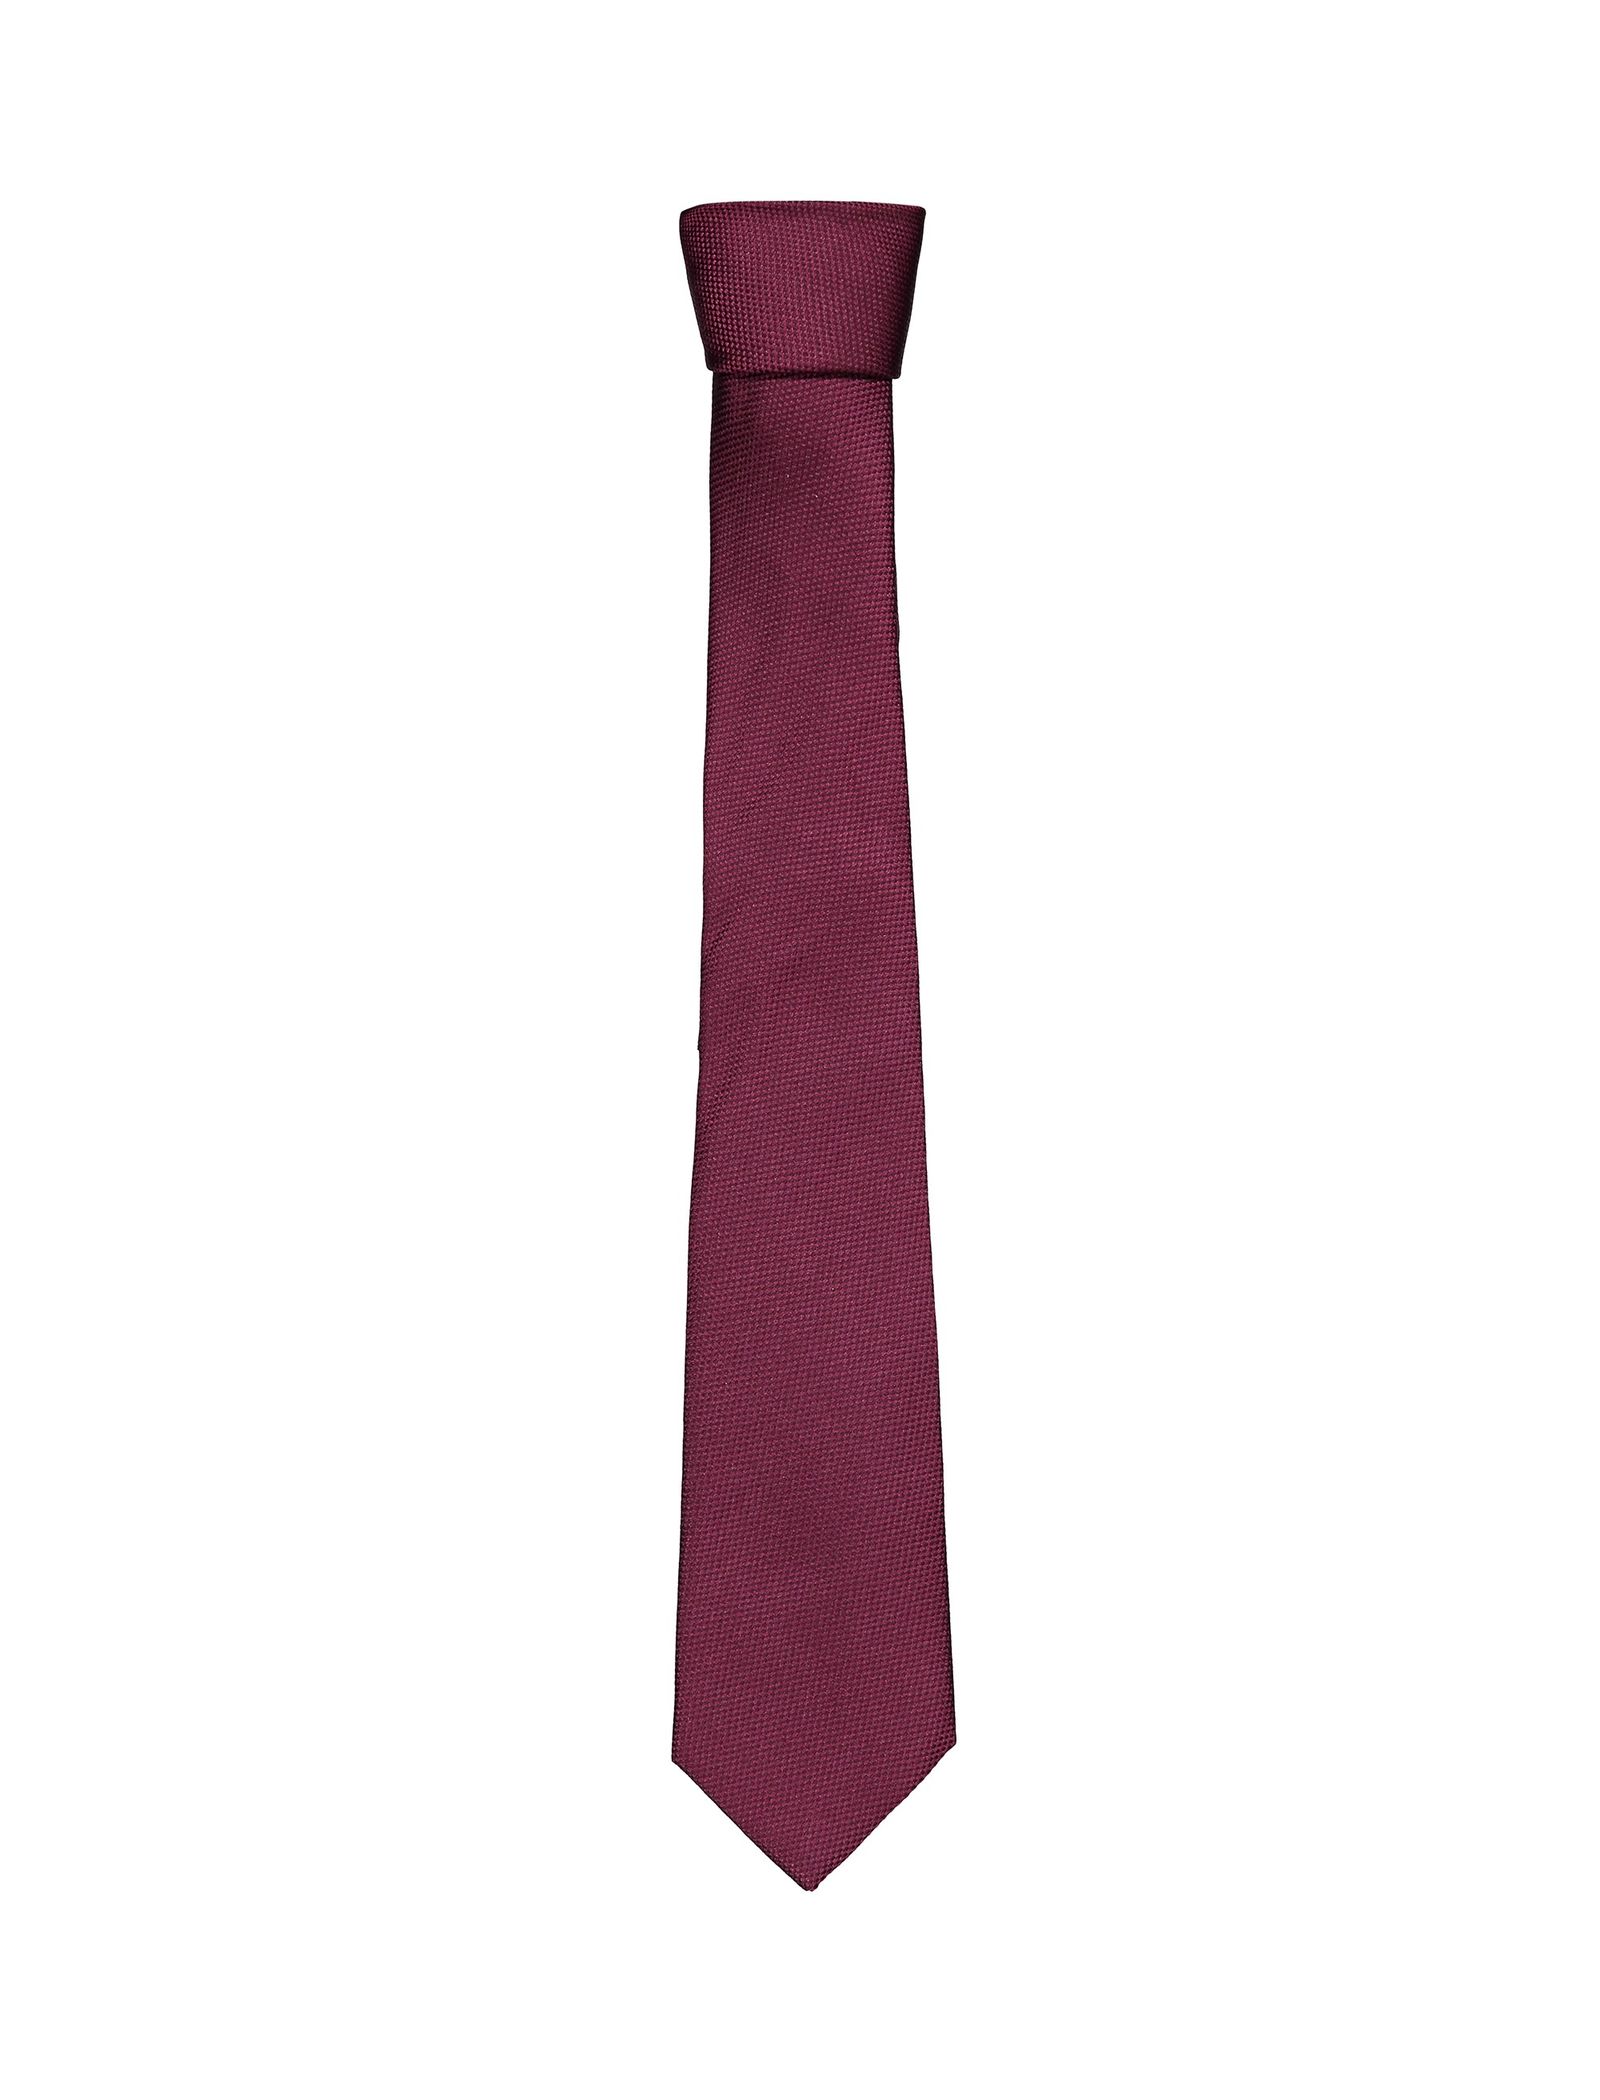 کراوات ابریشمی مردانه - مانگو - قرمز تيره - 1